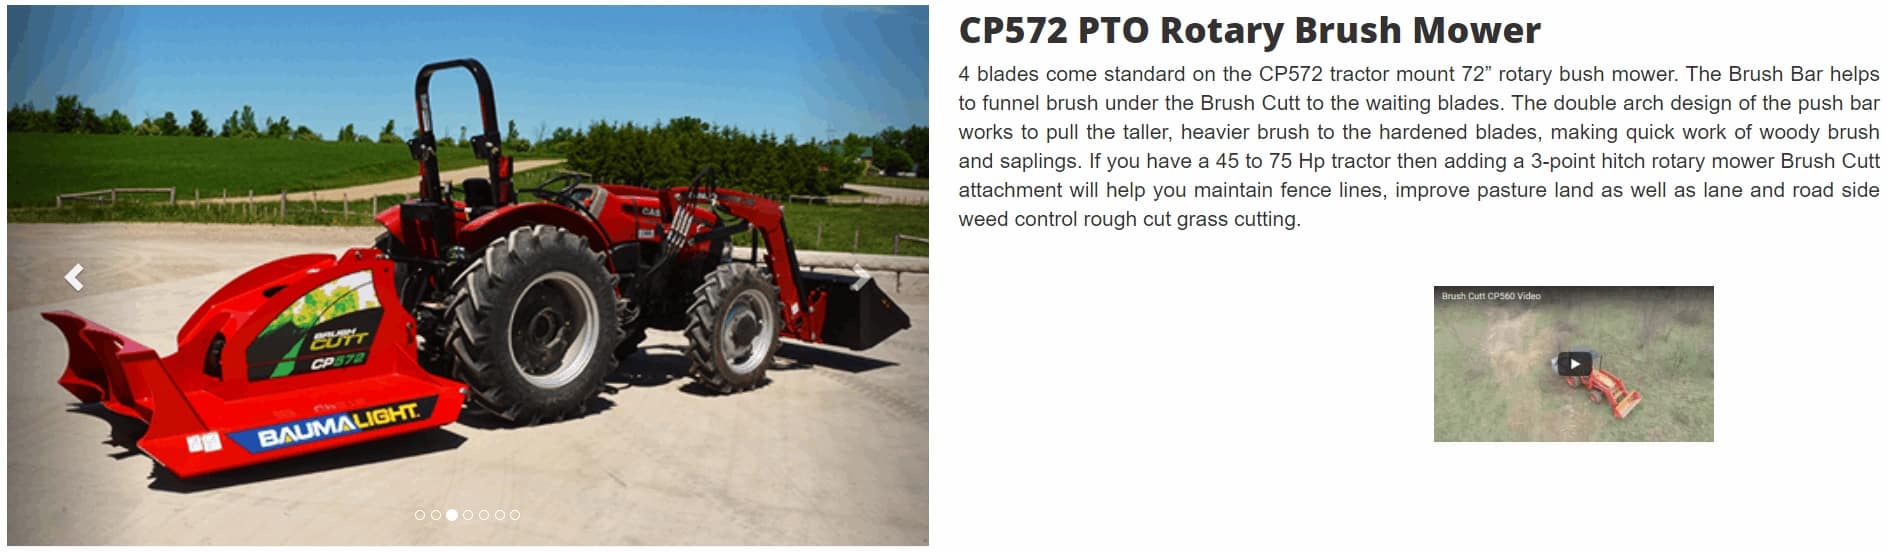 Baumalight CP572 PTO Rotary Brush Mower